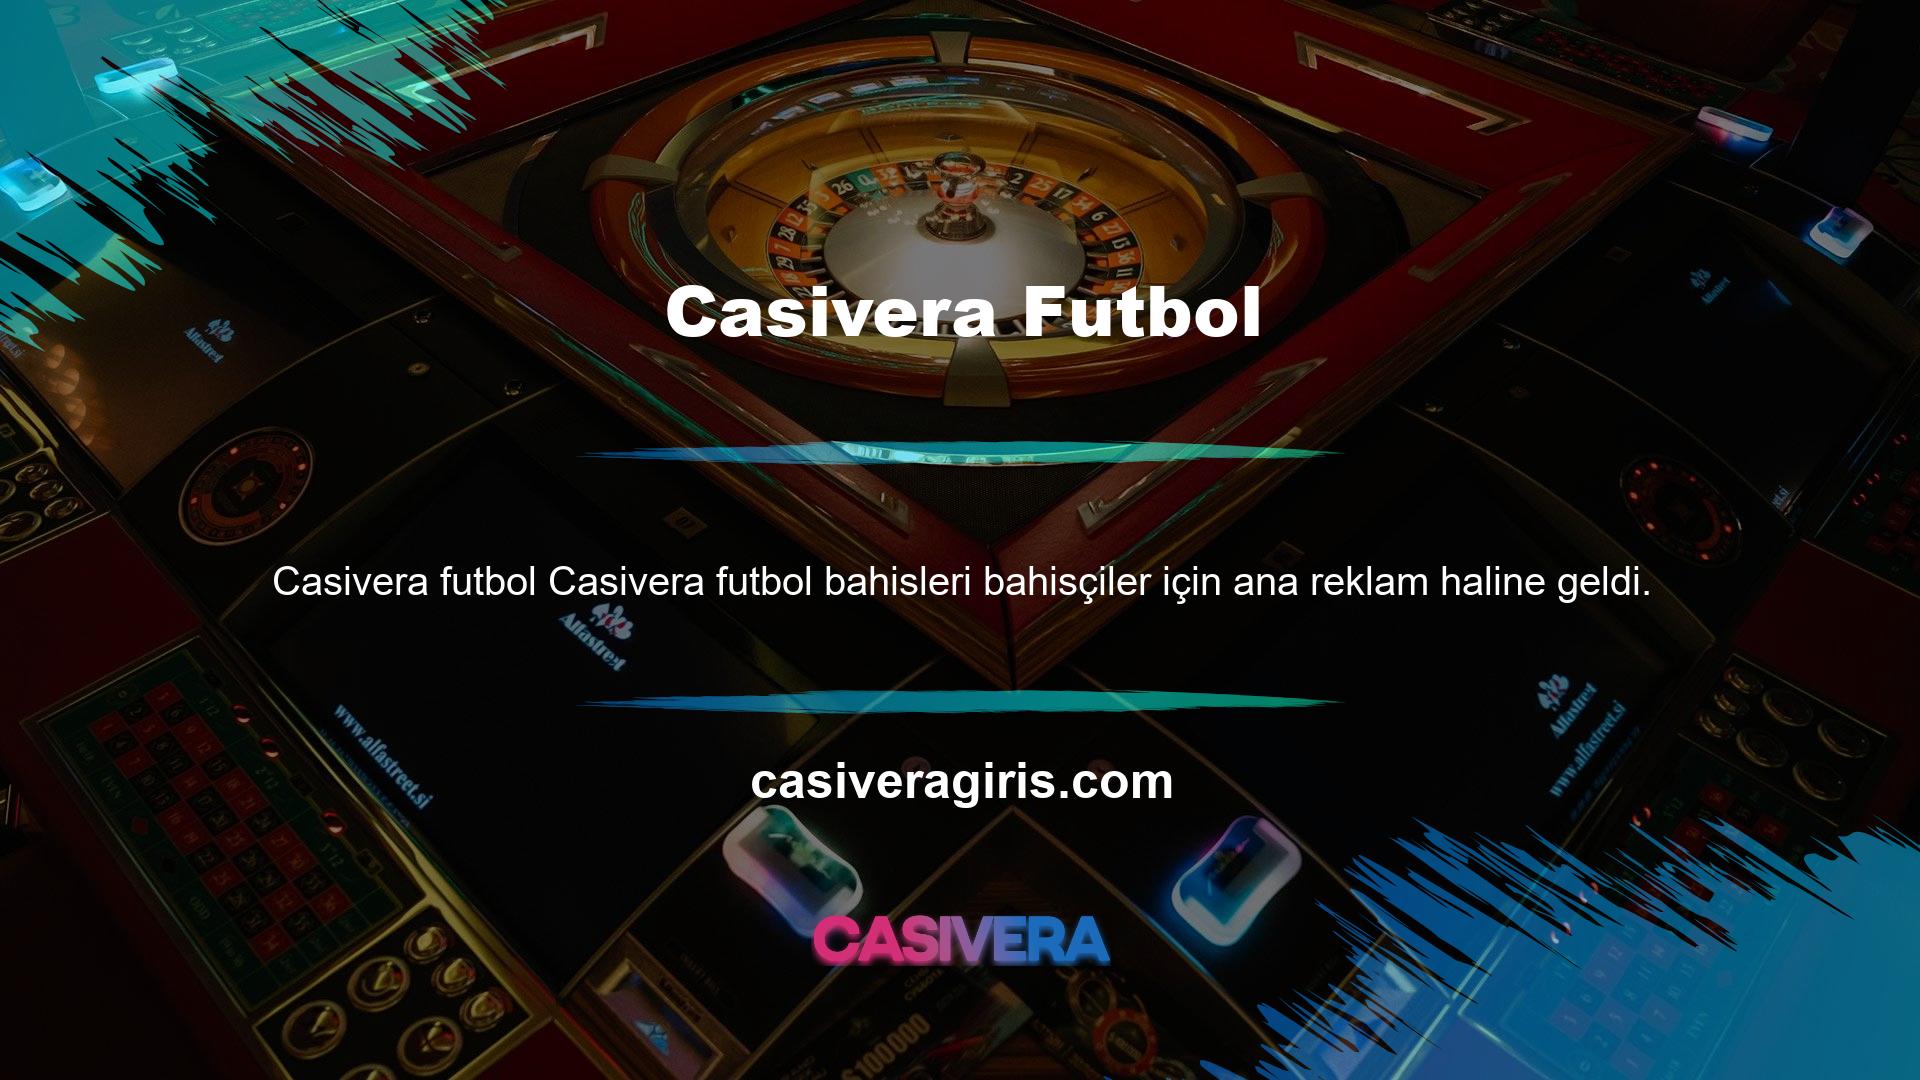 Casivera spor sayfası Casivera spor sayfası oldukça eksiksizdir